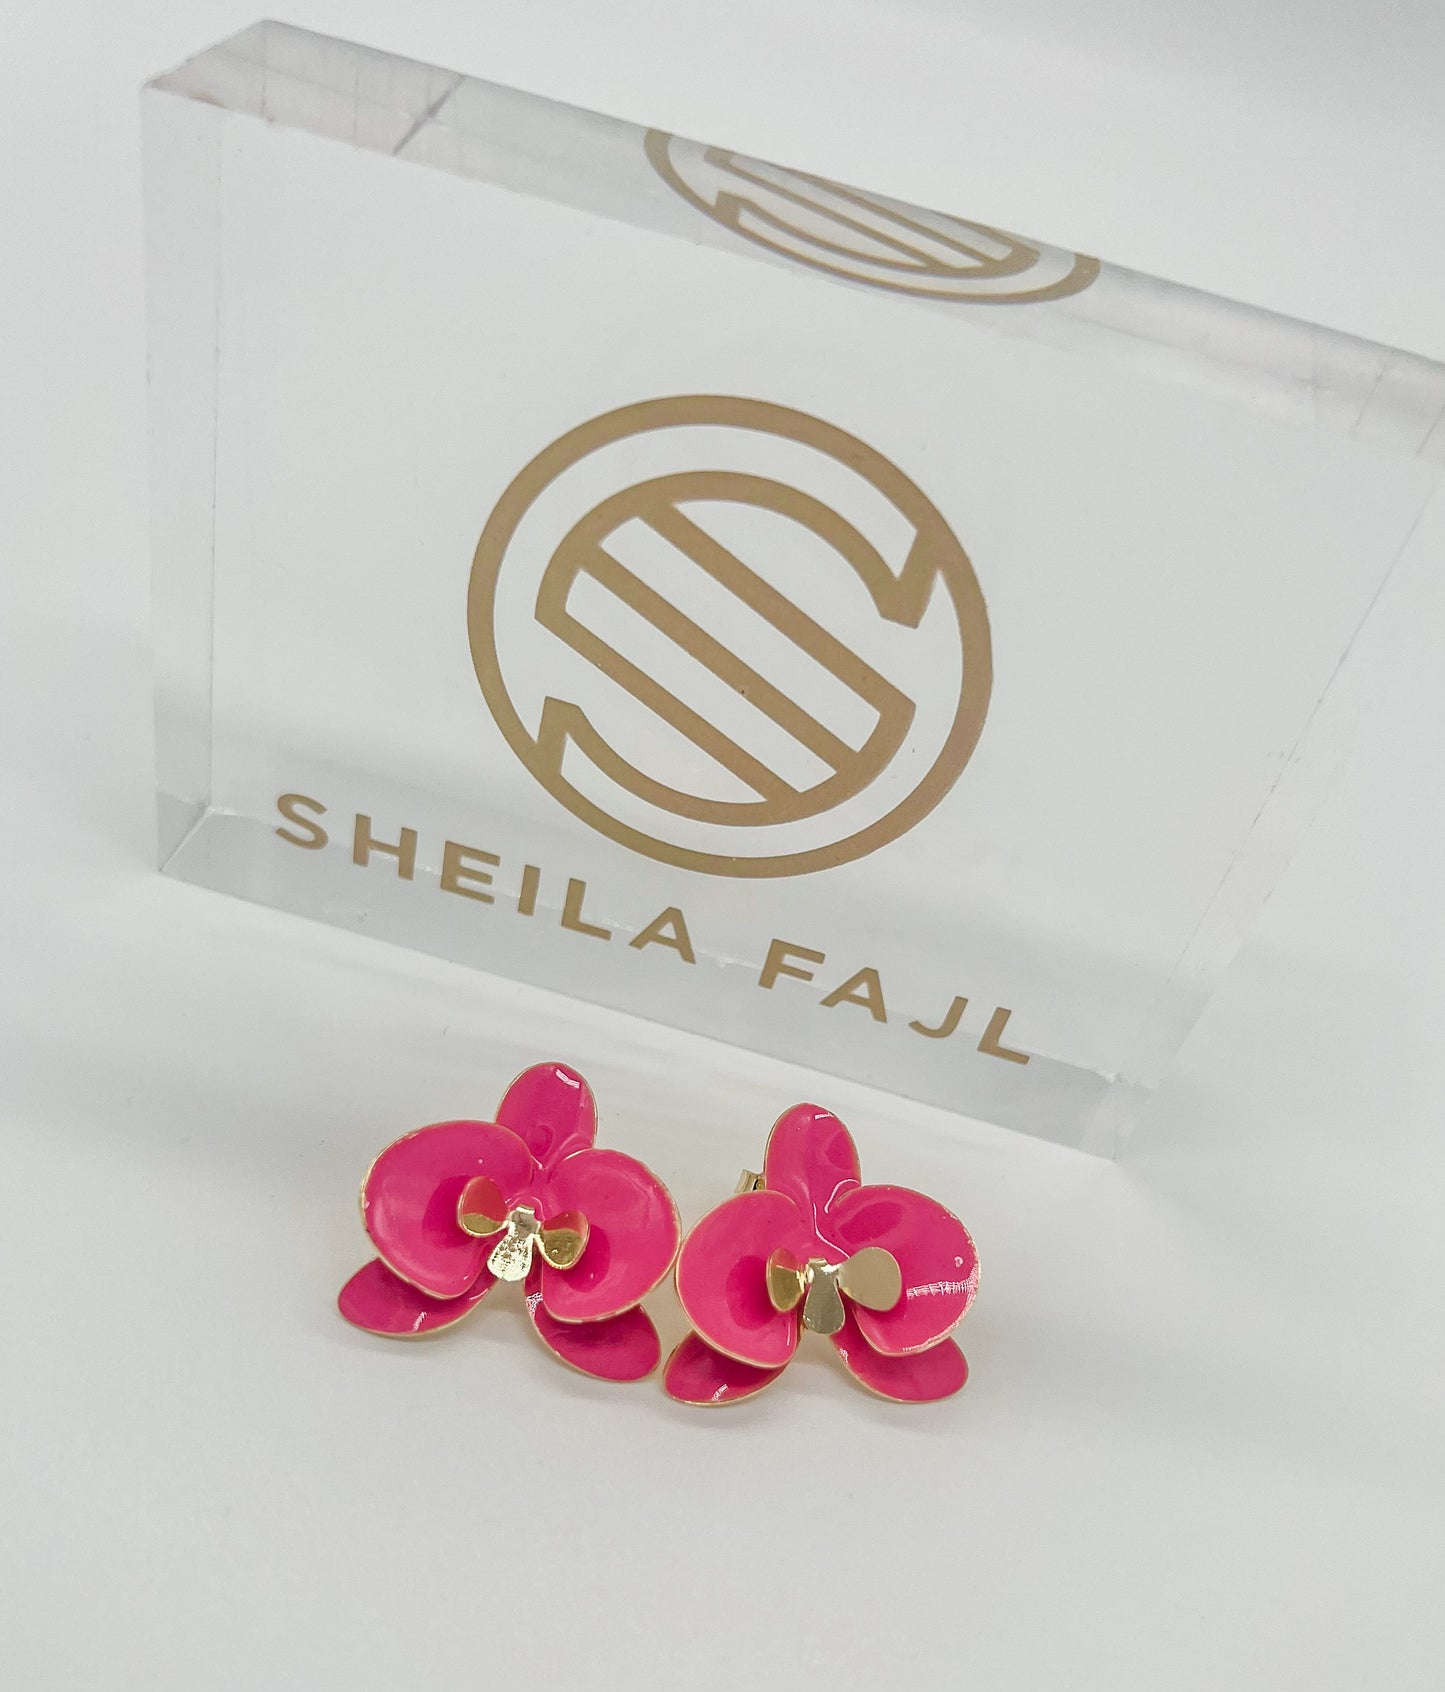 Sheila Fajl Pink Orchid Studs